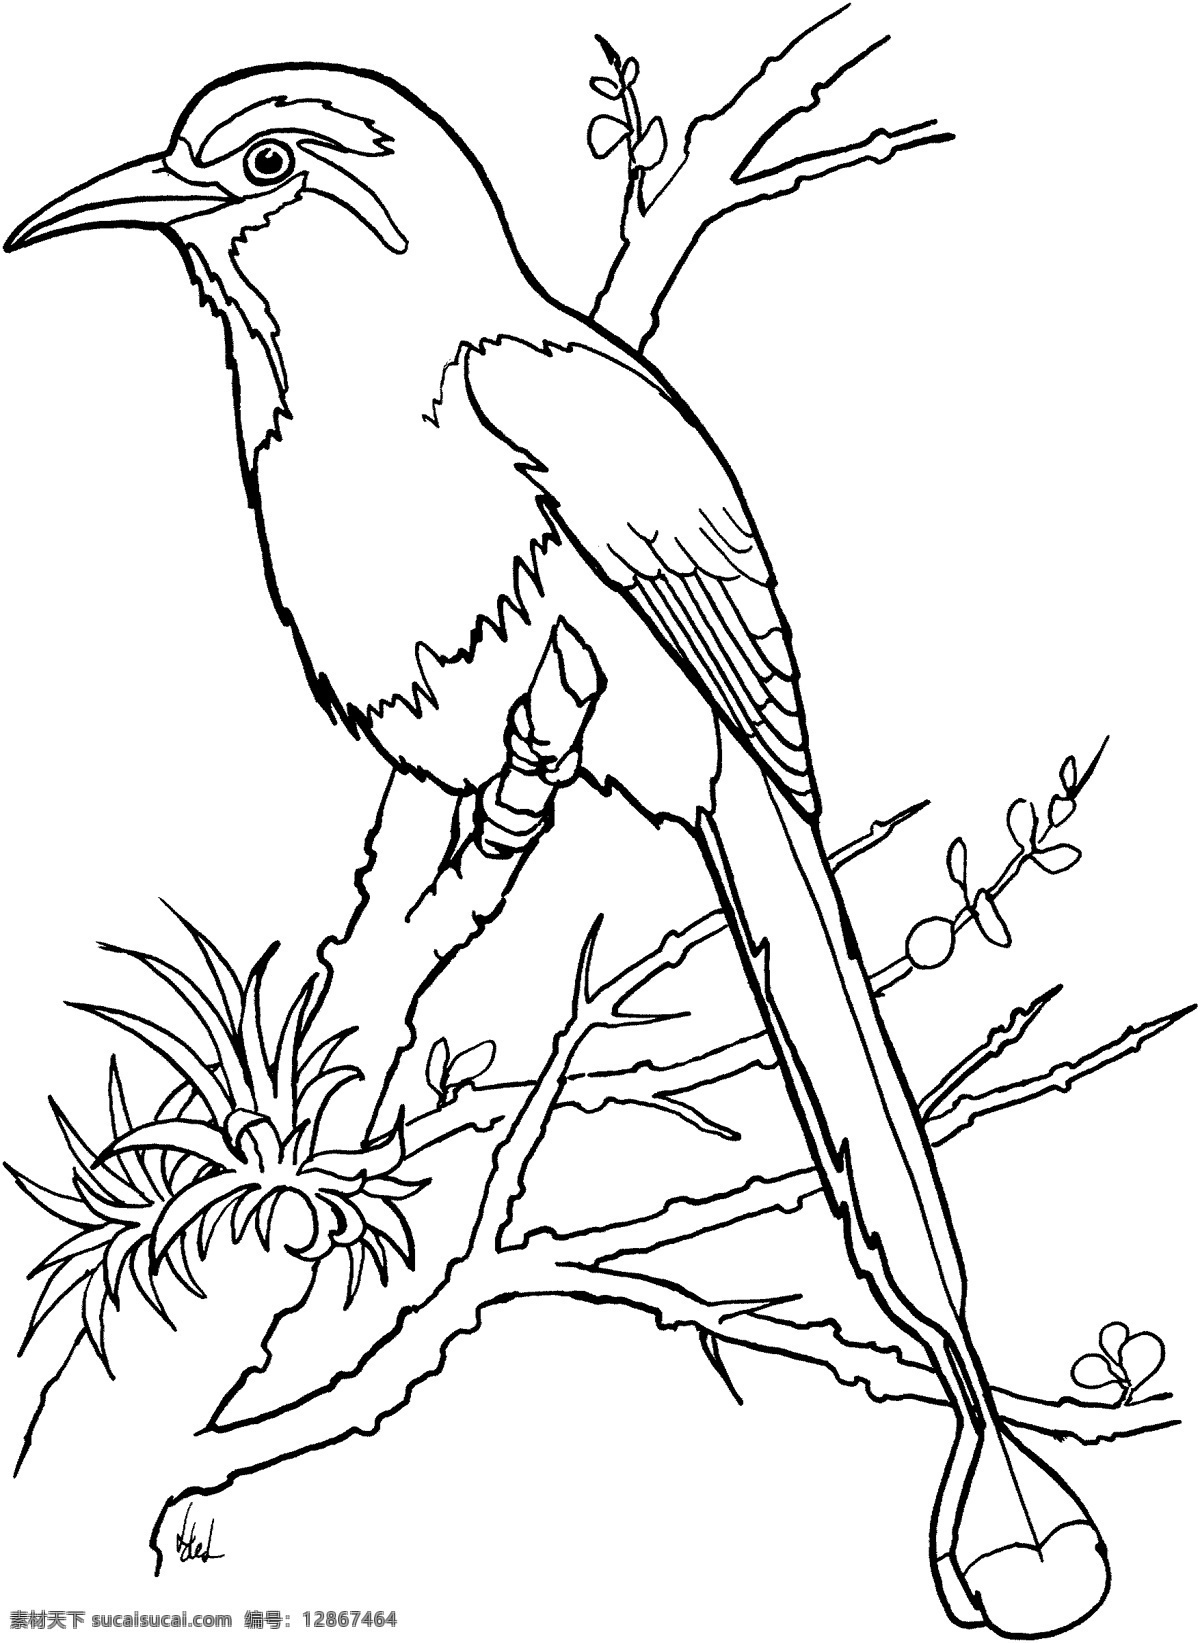 鸟类素描 动物素描 动物手绘画 设计素材 动物专辑 素描速写 书画美术 白色